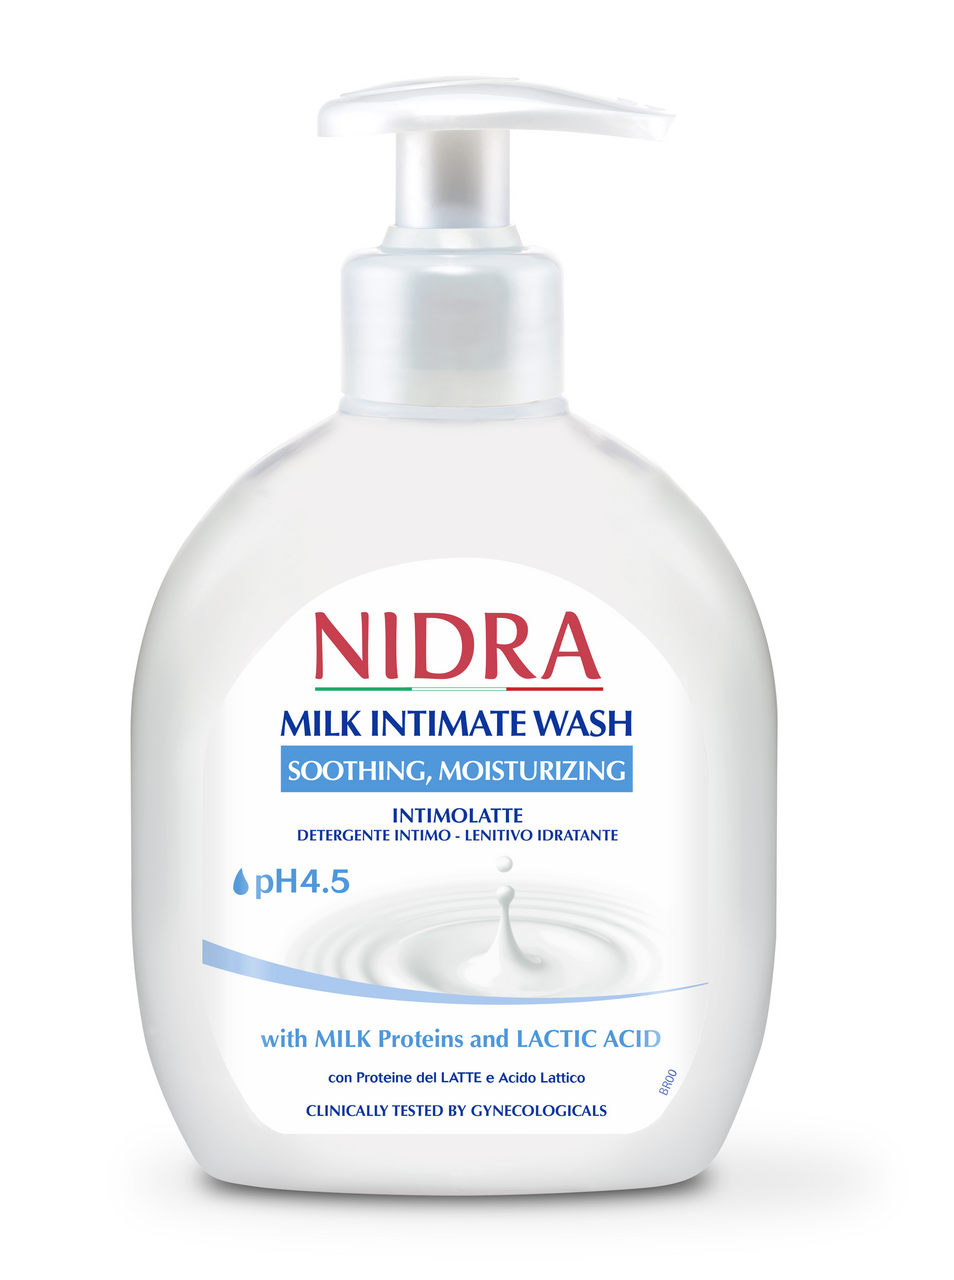 Nidra гель для интимной гигиены. Интимное мыло. Интимное мыло для мужчин. Интимное мыло Nidra. Гигиенический эффект